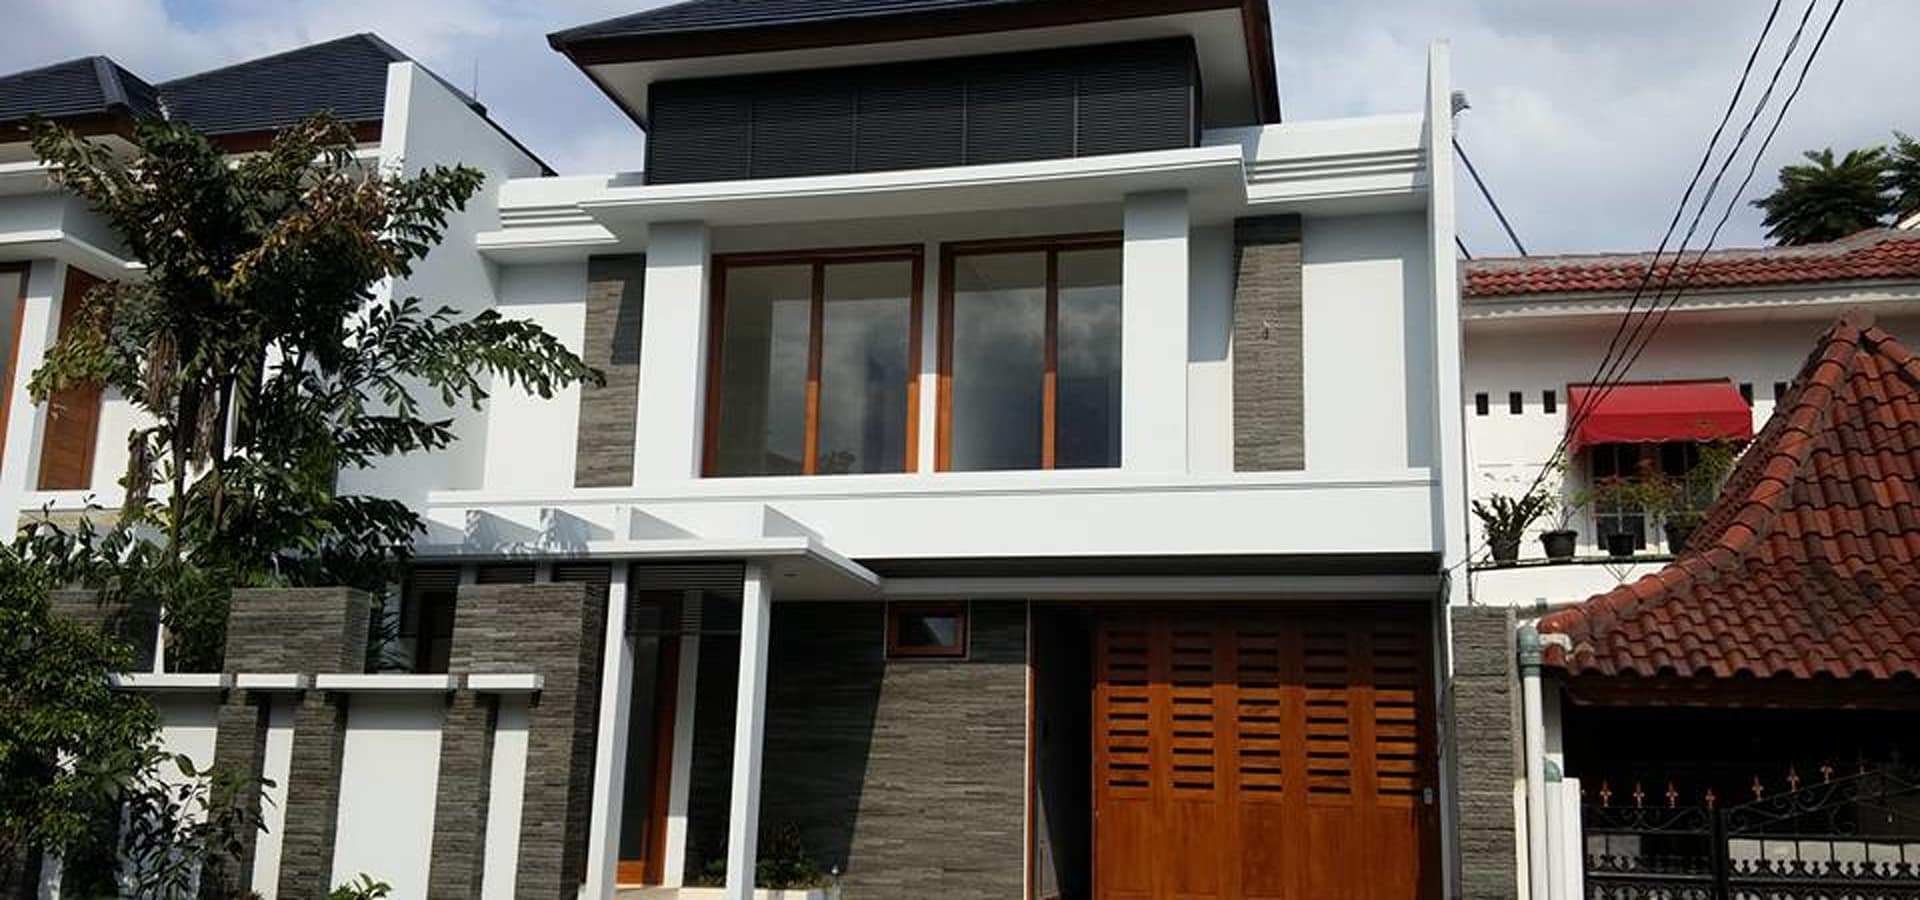 44 Contoh Desain Rumah Bergaya Bali Modern Paling Banyak di Minati